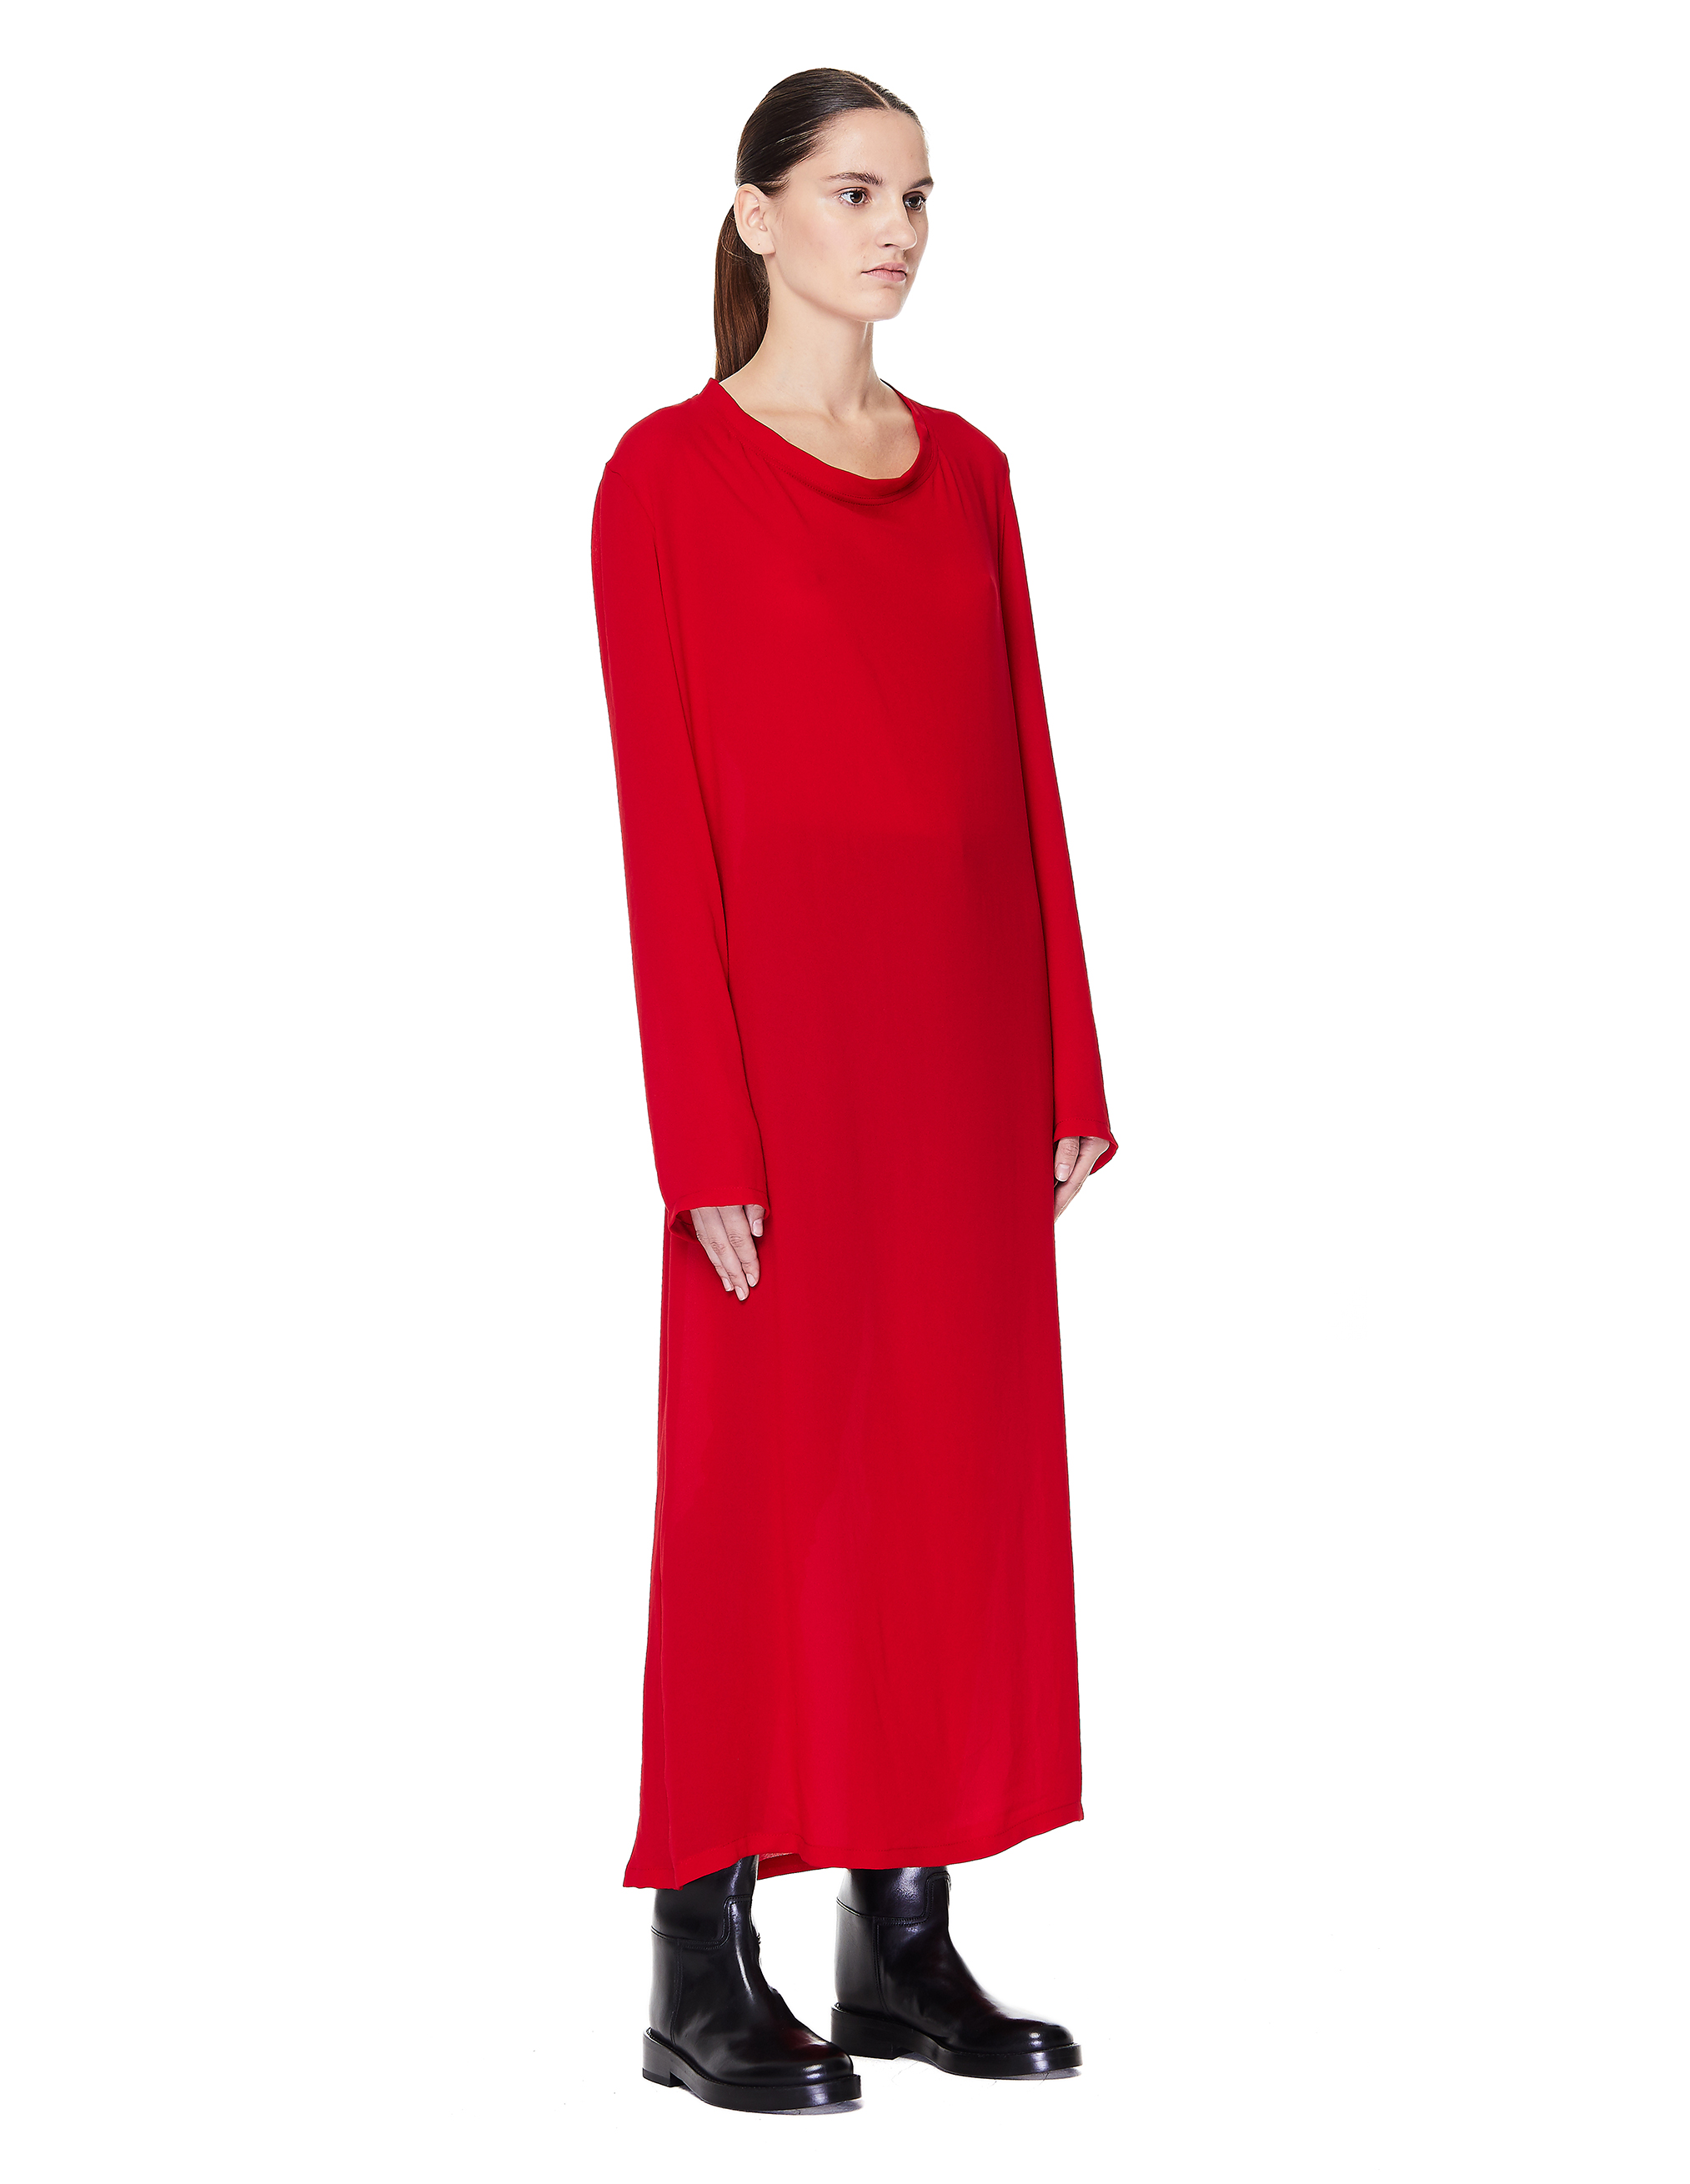 Ann Demeulemeester Red Maxi Dress